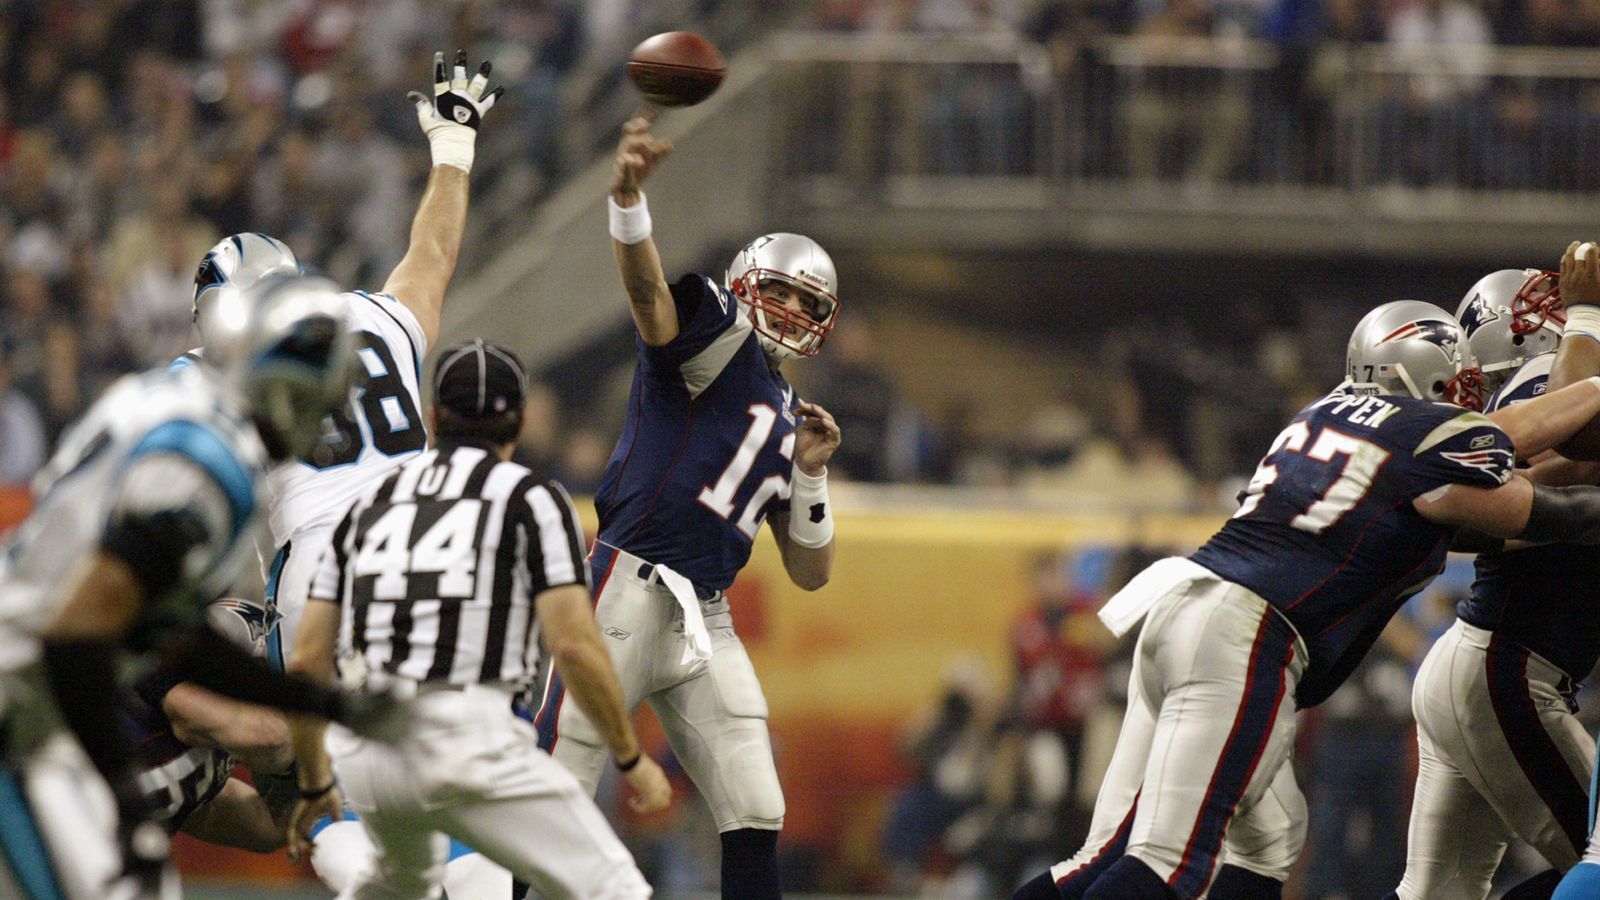 
                <strong>2004 - Super Bowl XXXVIII - New England Patriots</strong><br>
                2004 führte Quarterback Tom Brady nach 2002 die New England Patriots wieder zum Triumph im Super Bowl und heimste dafür die Trophäe als Most Valuable Player (MVP) ein. Erneut durch ein spätes Field Goal siegte das Team aus Foxborough mit 32:29.
              